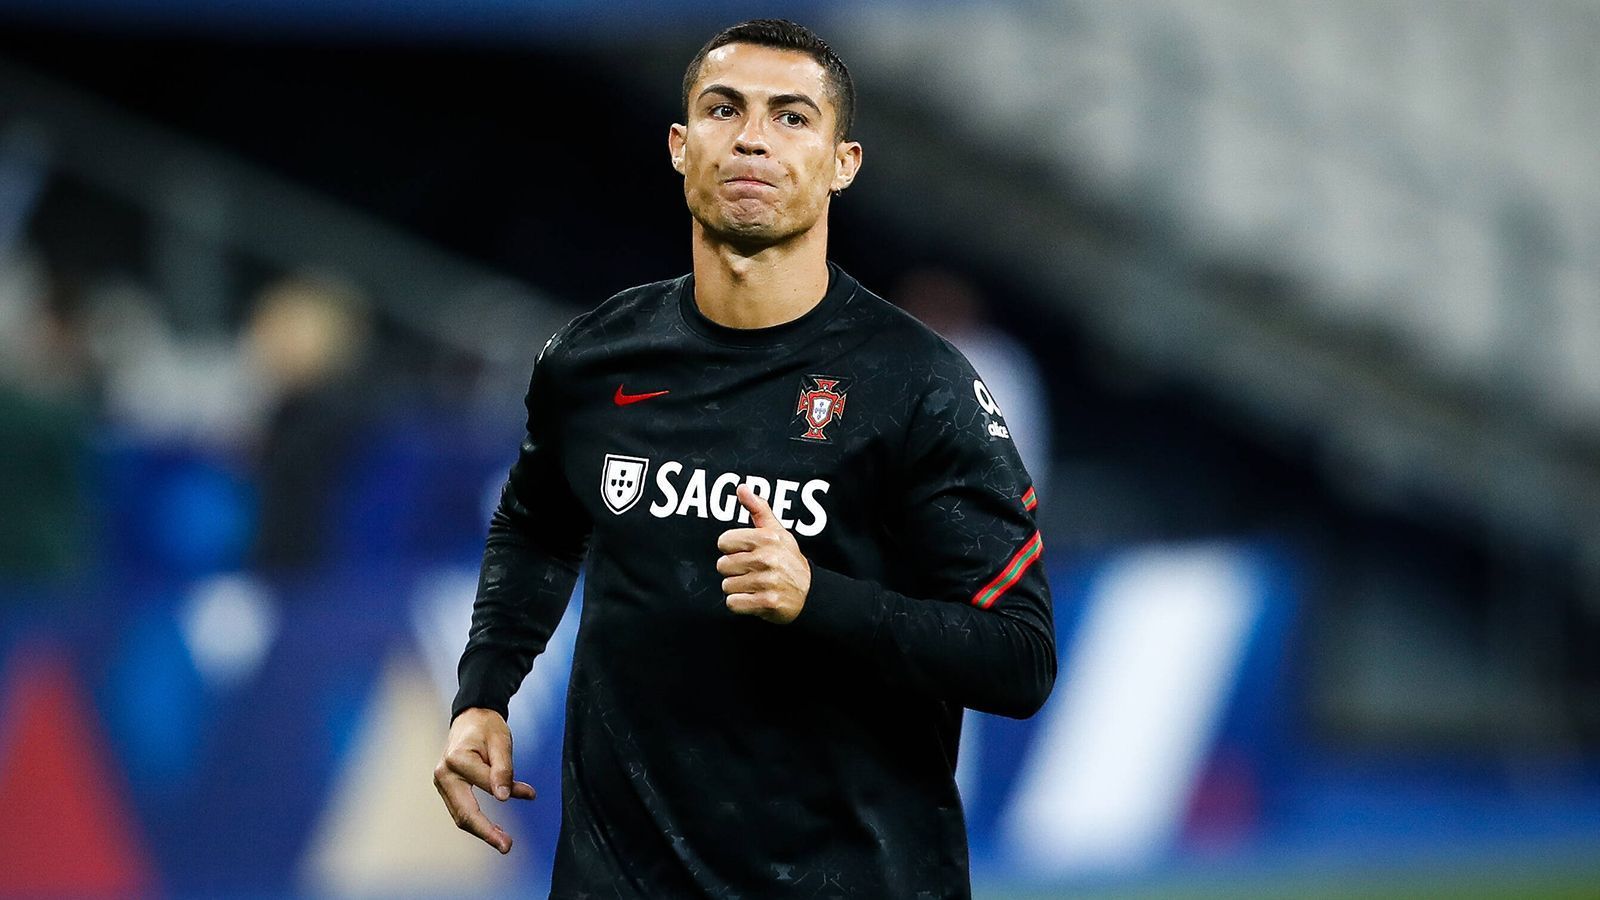 
                <strong>Cristiano Ronaldo (Juventus Turin)</strong><br>
                Noch während der Länderspielreise wurde der portugiesische Superstar positiv getestet. Trotzdem flog "CR7" wohl ohne Genehmigung der italienischen Gesundheitsämter in einem Spezialflugzeug zurück nach Turin. Von dort postete er bereits fröhliche Fotos auf Instagram. Dem Juve-Star scheint es gut zu gehen.
              